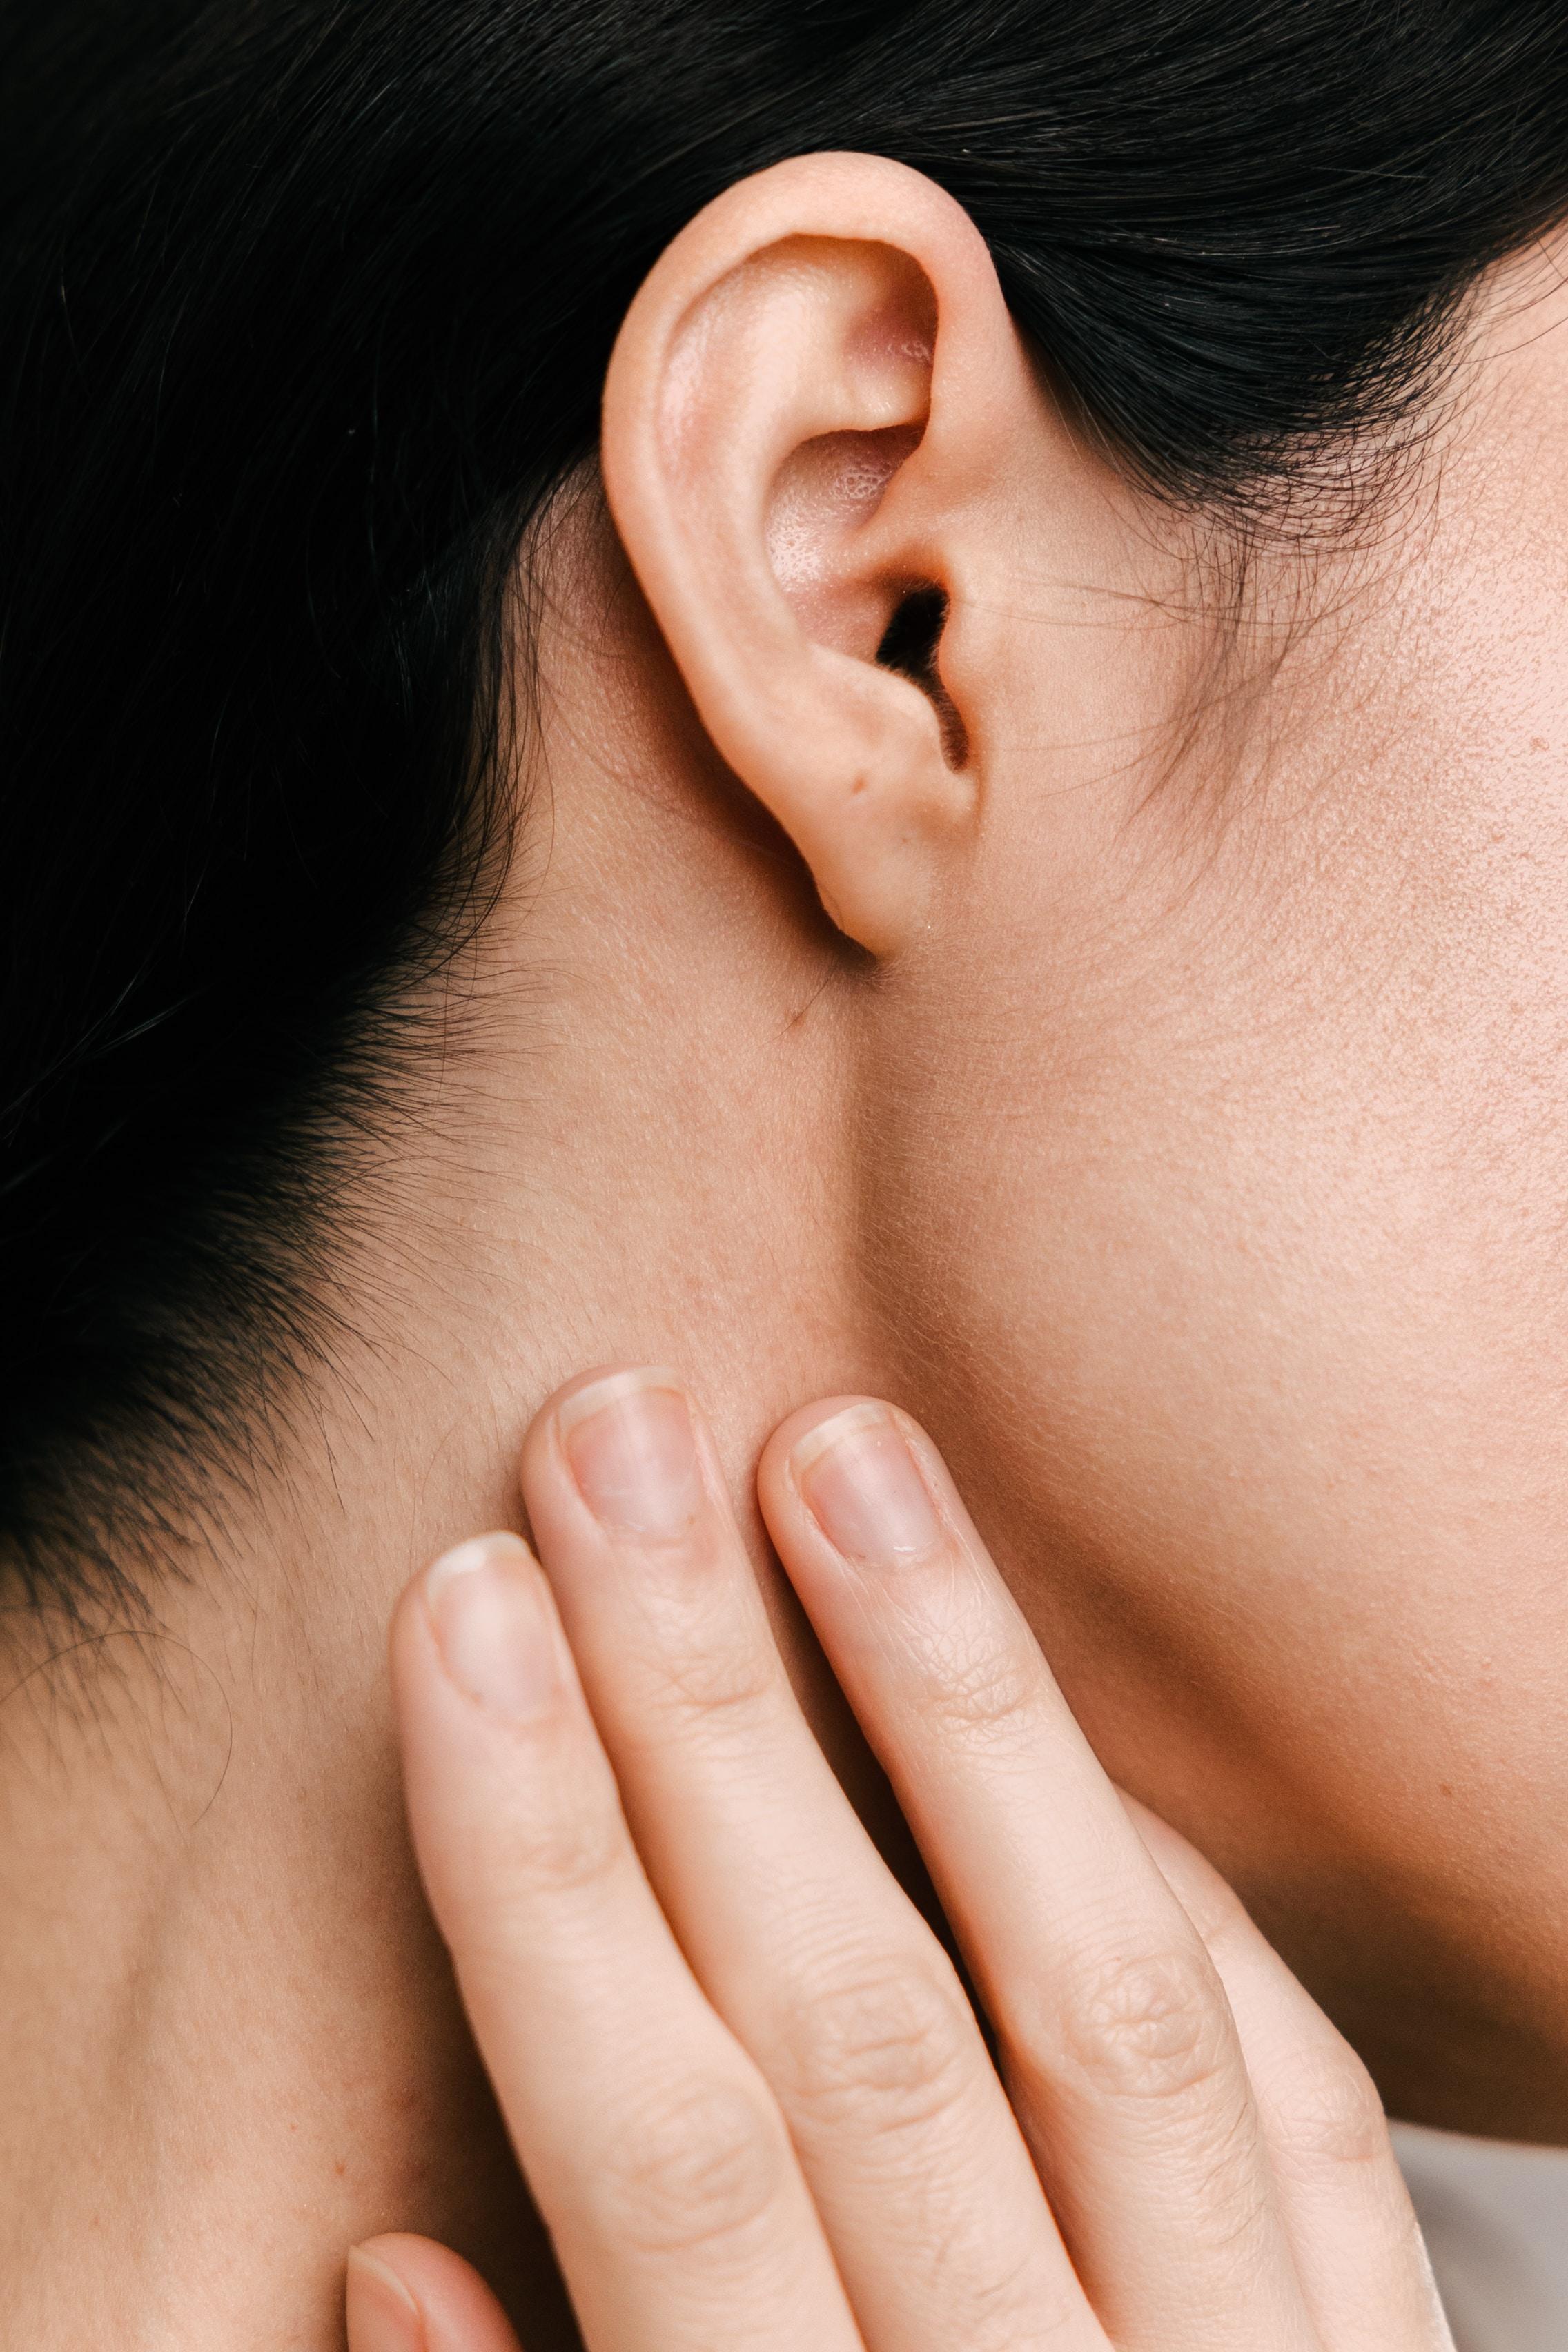 Otoplastyka - operacja plastyczna uszu. Jak wygląda, ile kosztuje i jak dbać o uszy po operacji? Korekcja odstających uszu. Korekta uszu – plastyka odstających uszu. Jak wygląda operacja odstających uszu i kiedy można ją wykonać? 